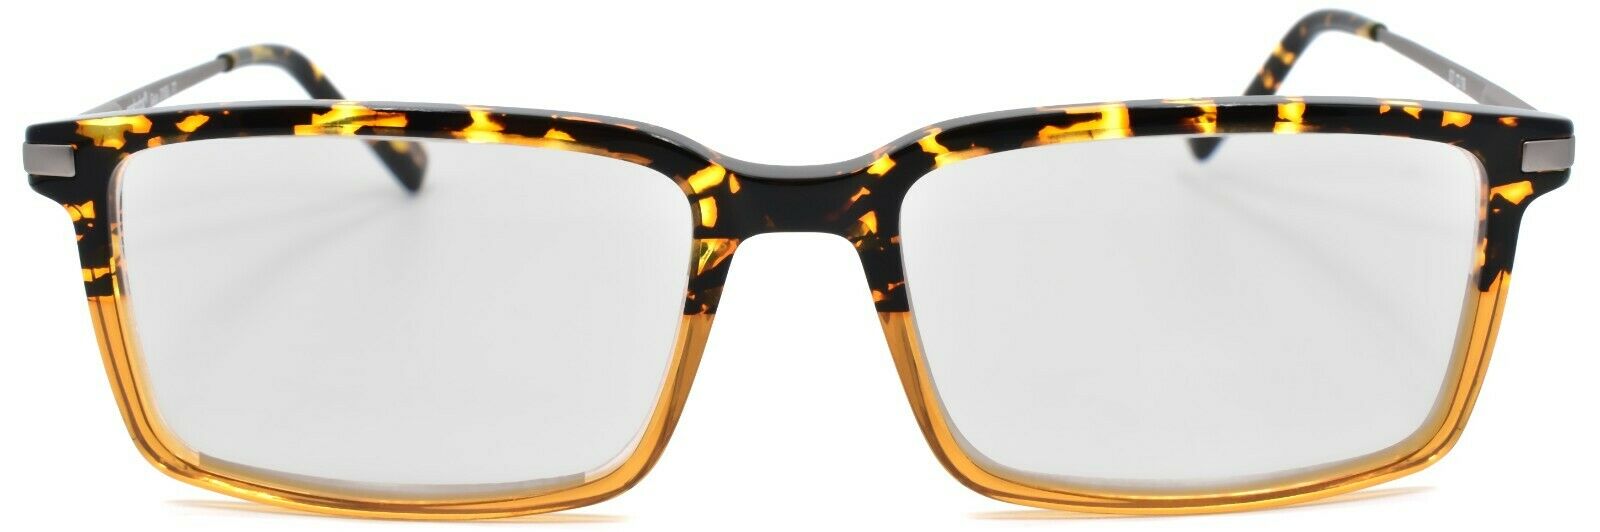 2-Eyebobs Gus 3155 77 Men's Reading Glasses Amber Tortoise / Light Gunmetal +2.50-842754172141-IKSpecs